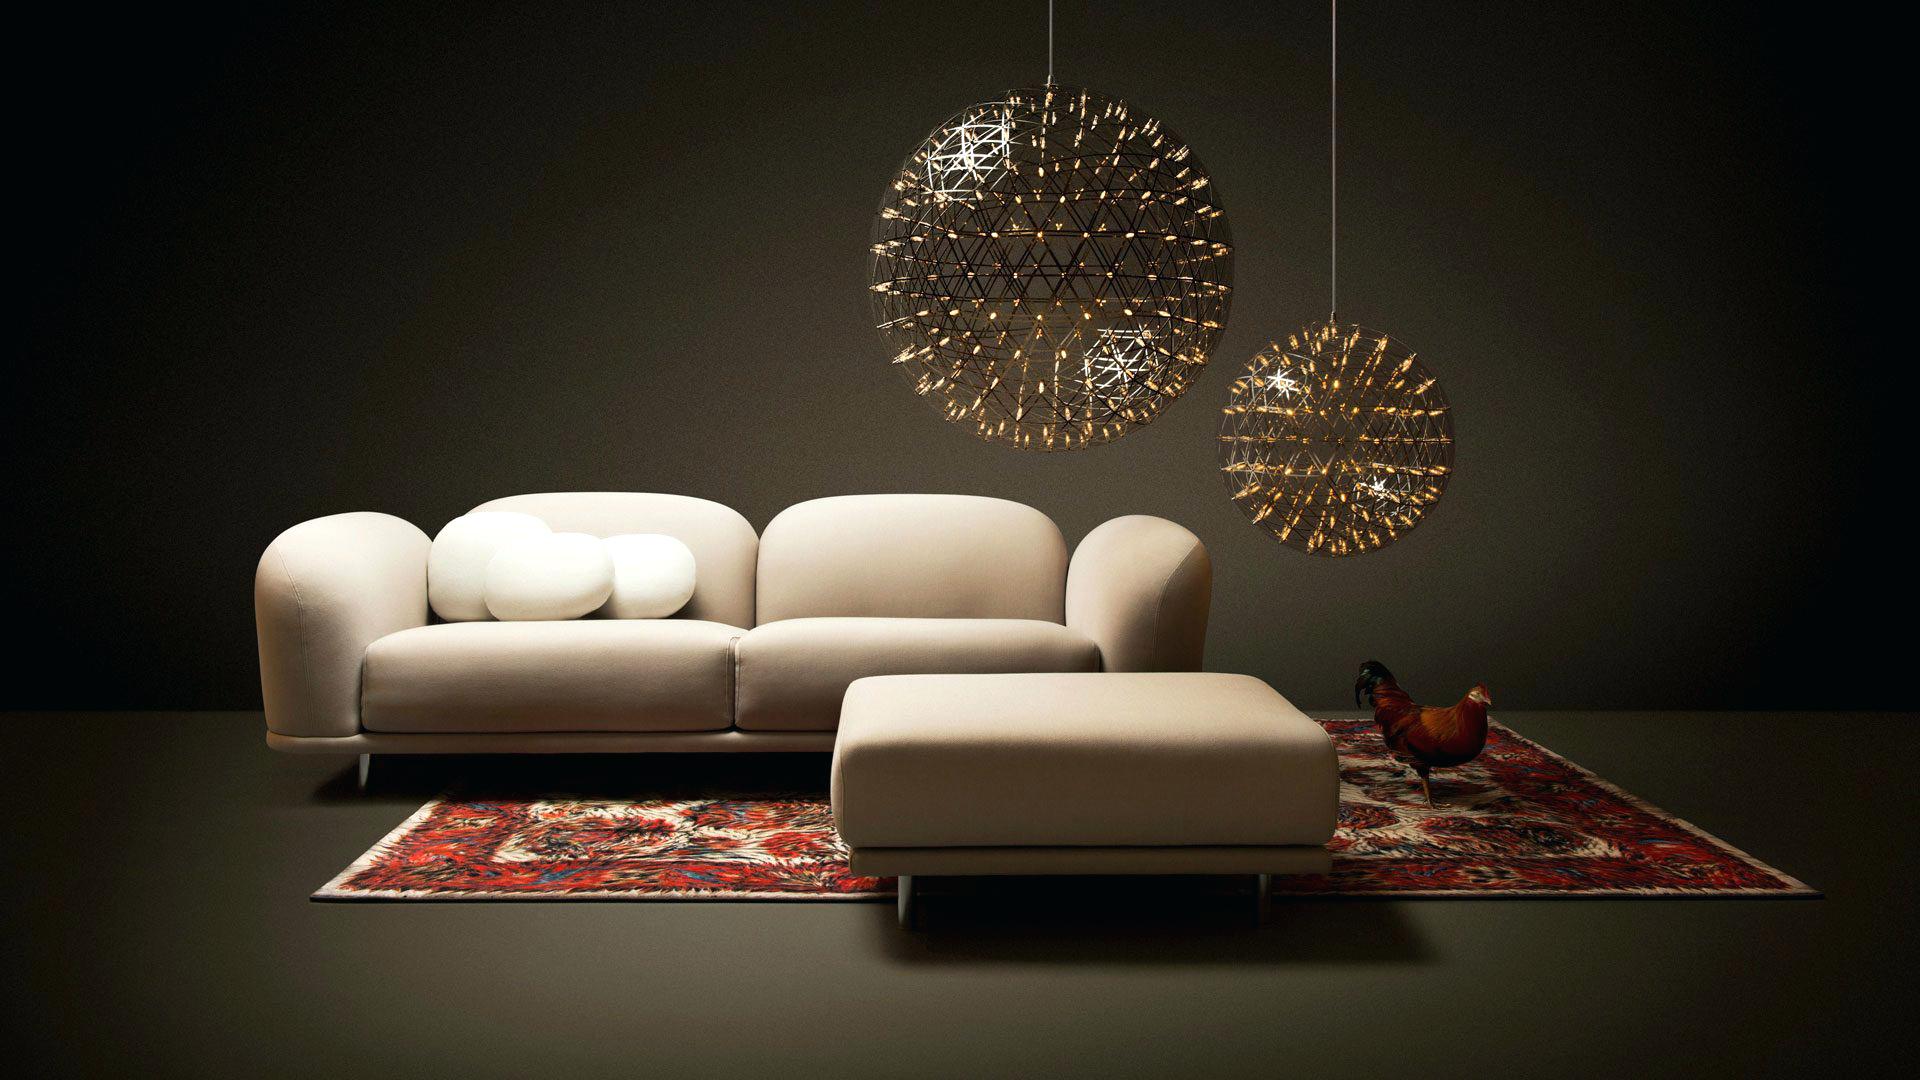 moooi-lighting-heracleum-random-light-led-furniture-nyc.jpg